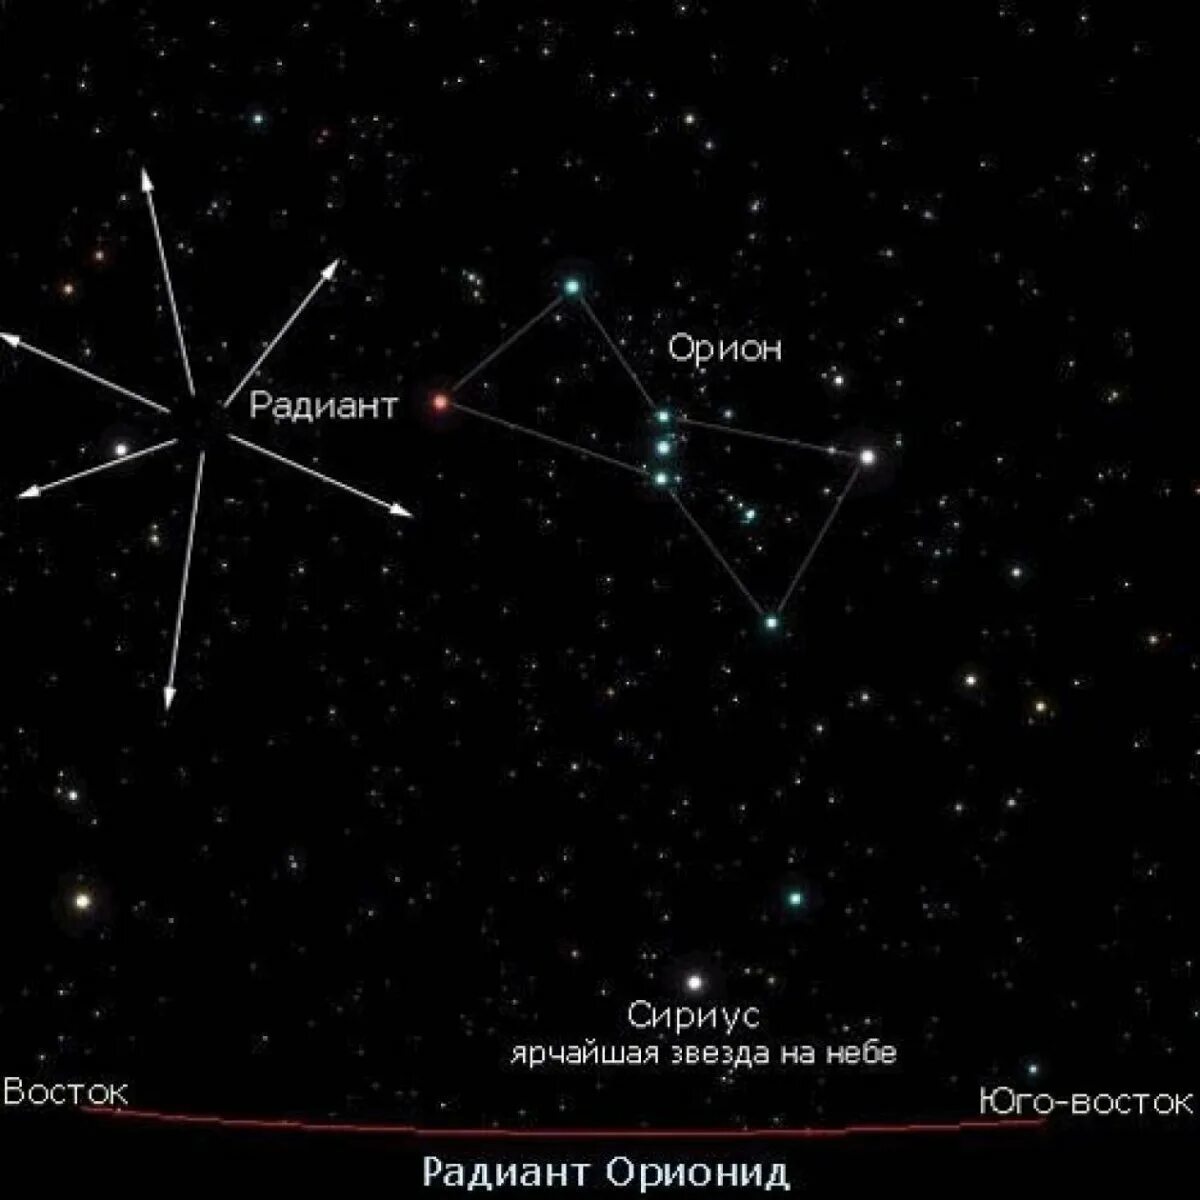 Ореон Созвездие самая яркая звезда. Сириус и Орион на Звездном небе. Созвездие Ориона и Сириус на карте звездного. Созвездие Орион и Сириус на карте звездного неба.